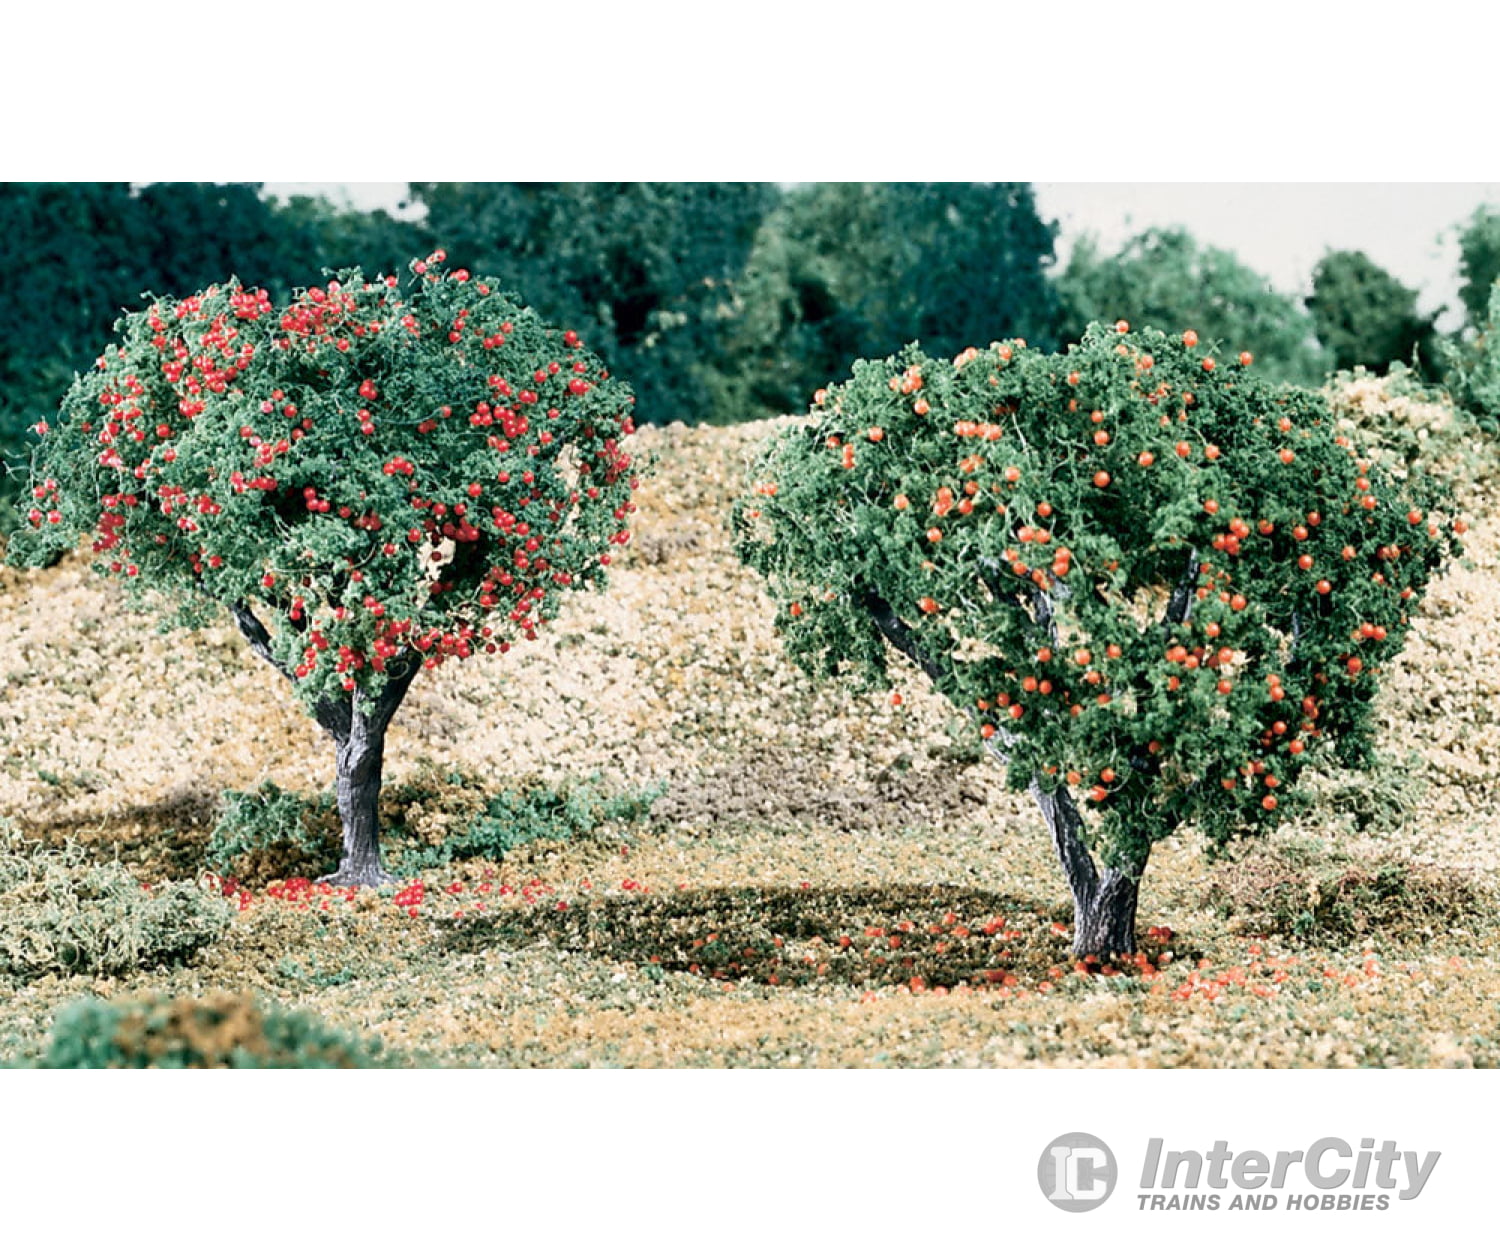 Woodland Scenics 47 Fruit - Apple/Orange Flock & Turf